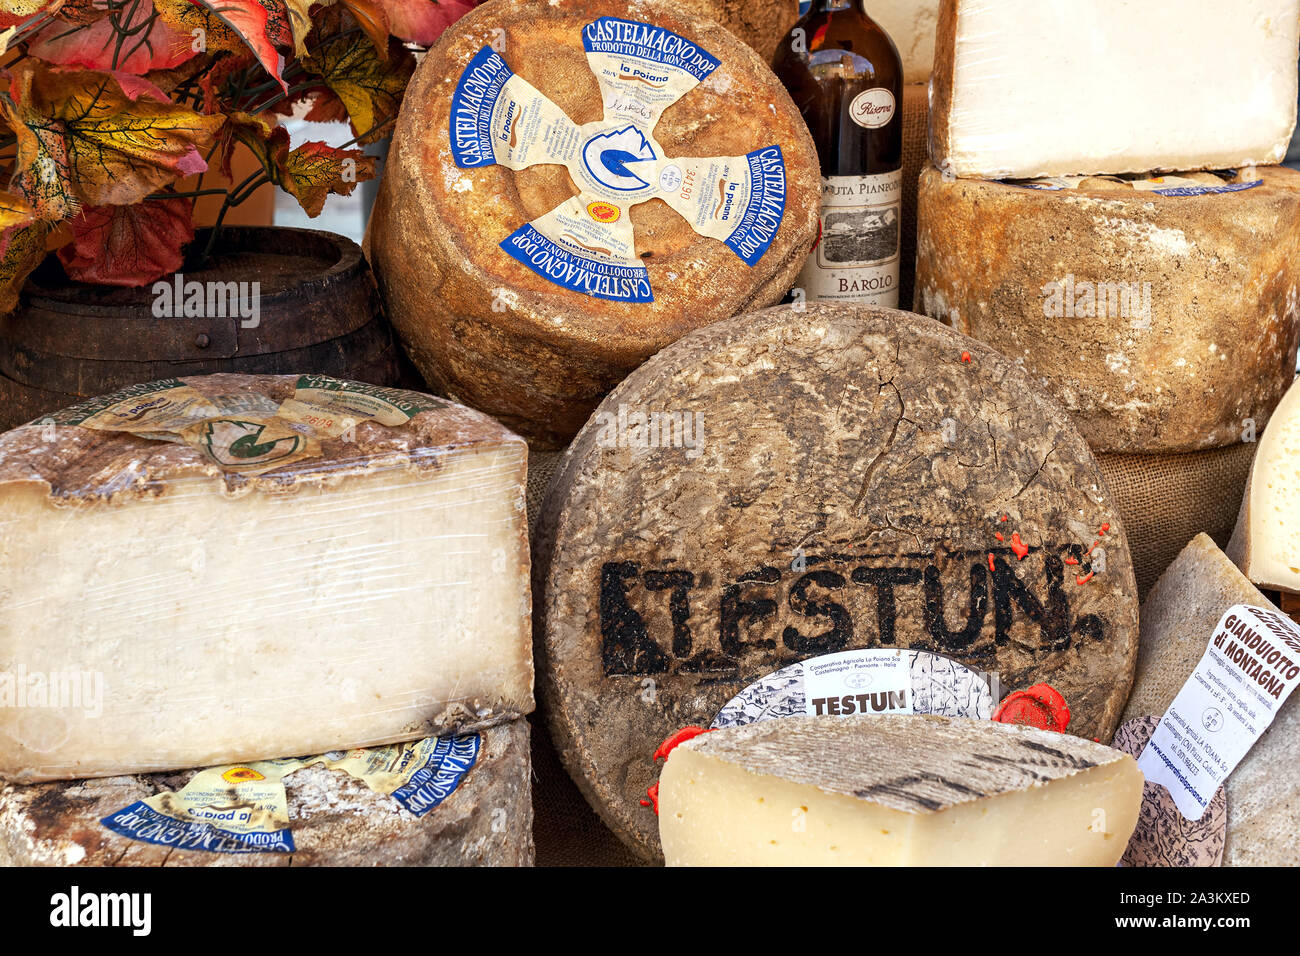 Différents types de fromages artisanaux au marché dans la vieille ville au cours annuel célèbre festival de la Truffe Blanche à Alba, Italie. Banque D'Images